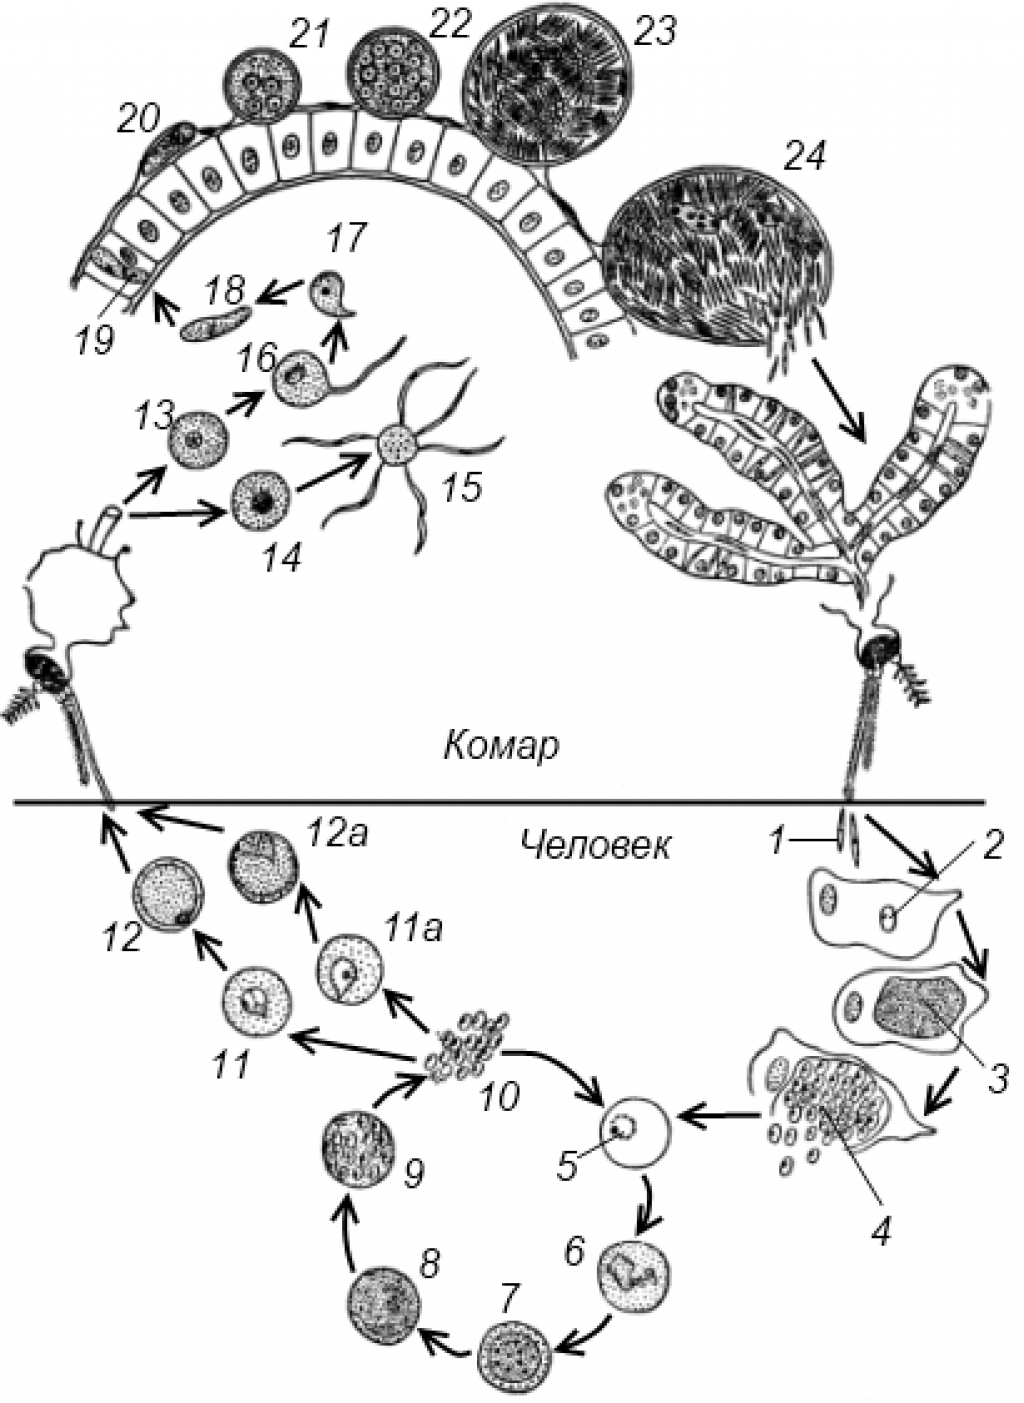 Возникновении малярии. Жизненный цикл малярийного плазмодия. Жизненный цикл малярийного плазмодия схема. Цикл развития плазмодия малярии схема. Жизненный цикл плазмодия схема.